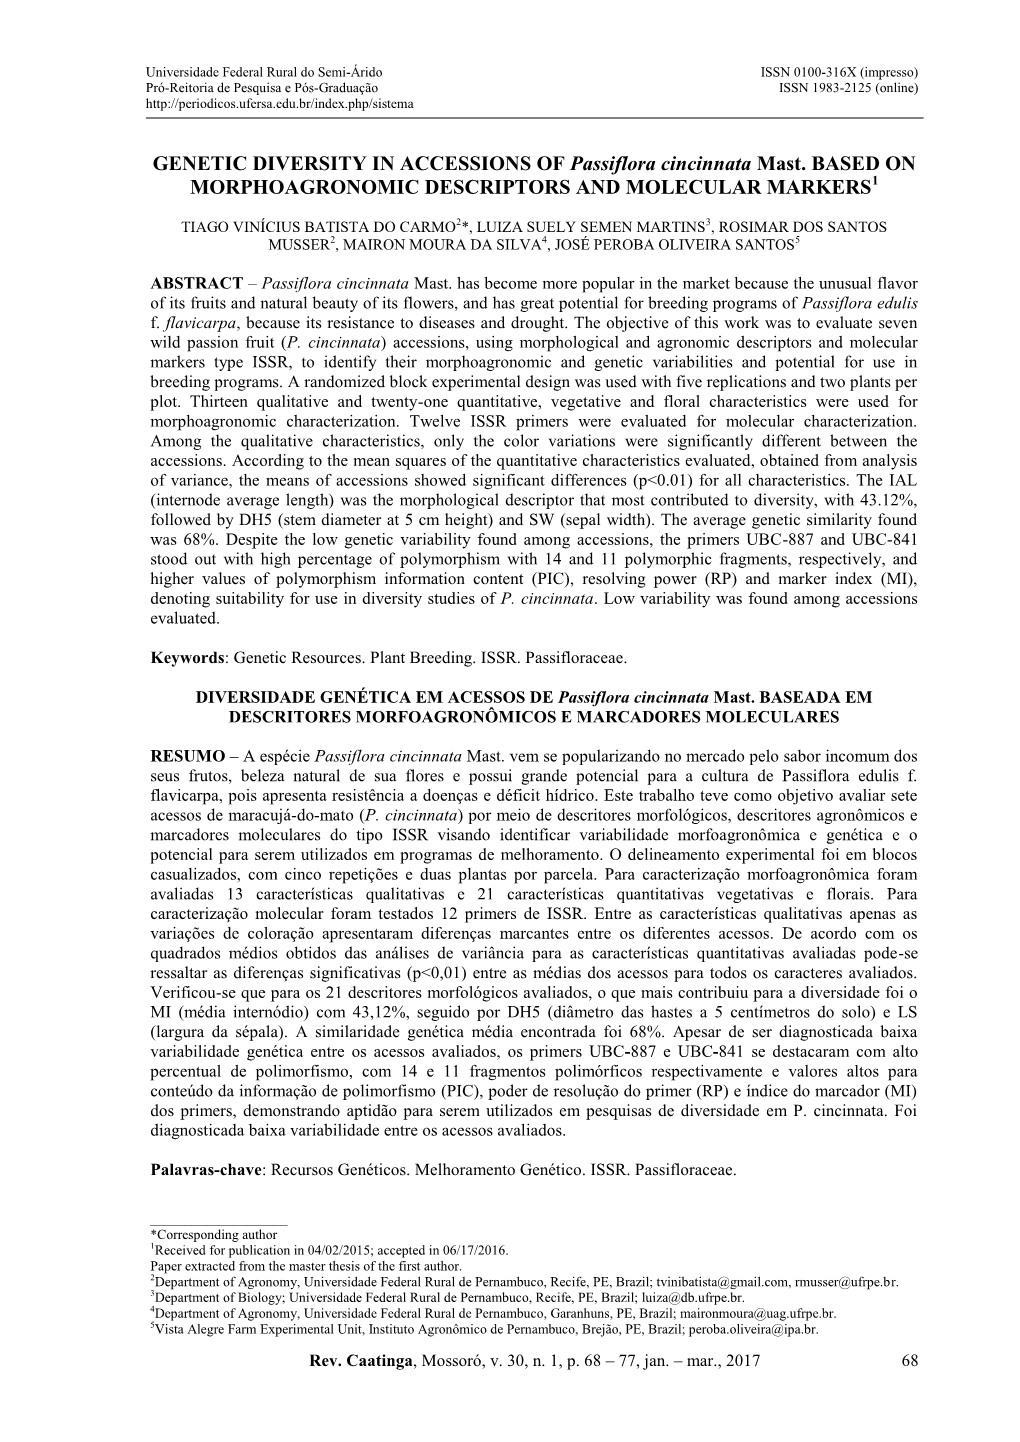 GENETIC DIVERSITY in ACCESSIONS of Passiflora Cincinnata Mast